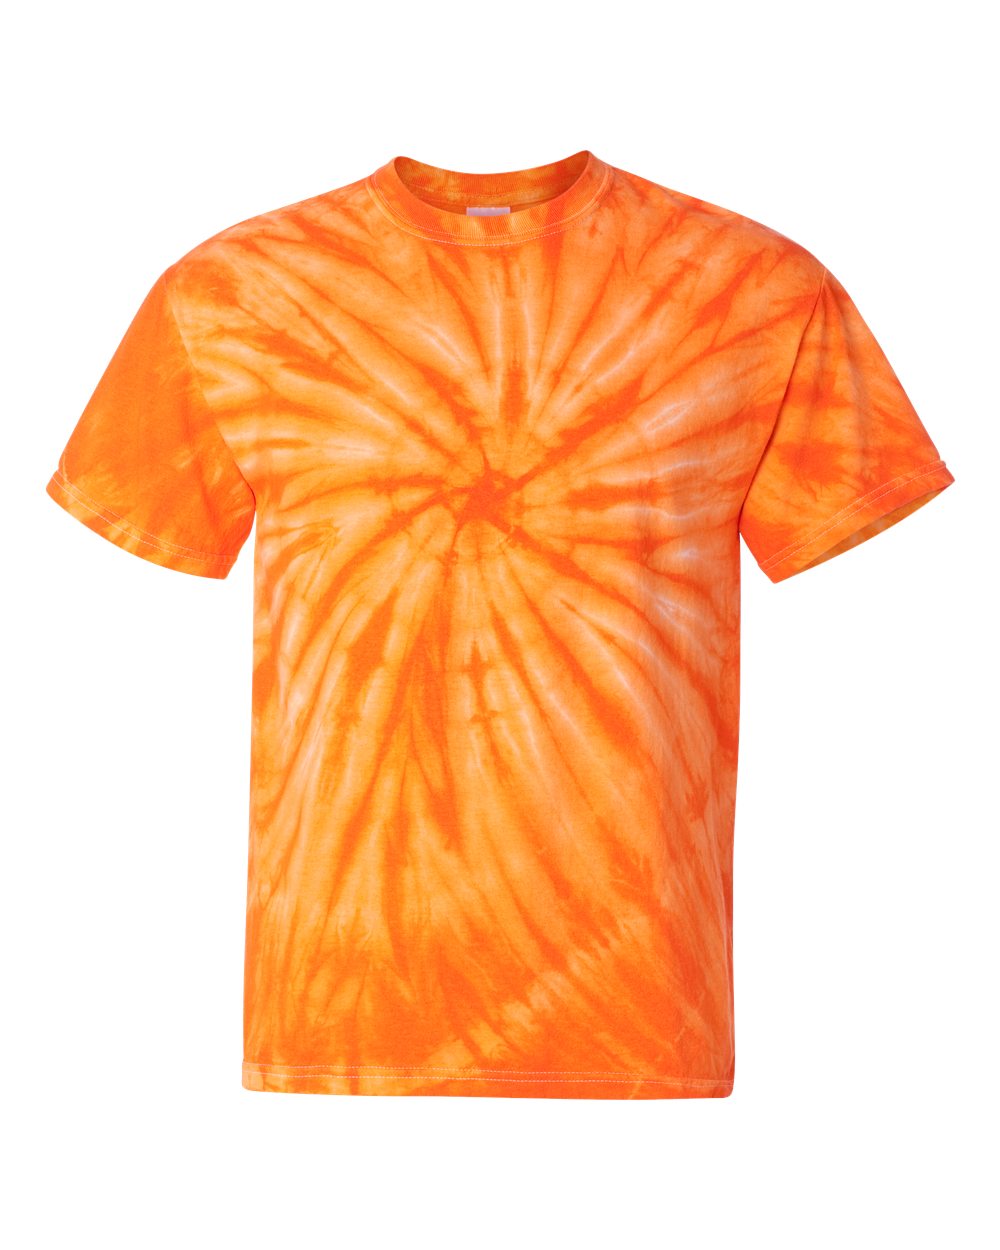 Espiral Dye - Naranja